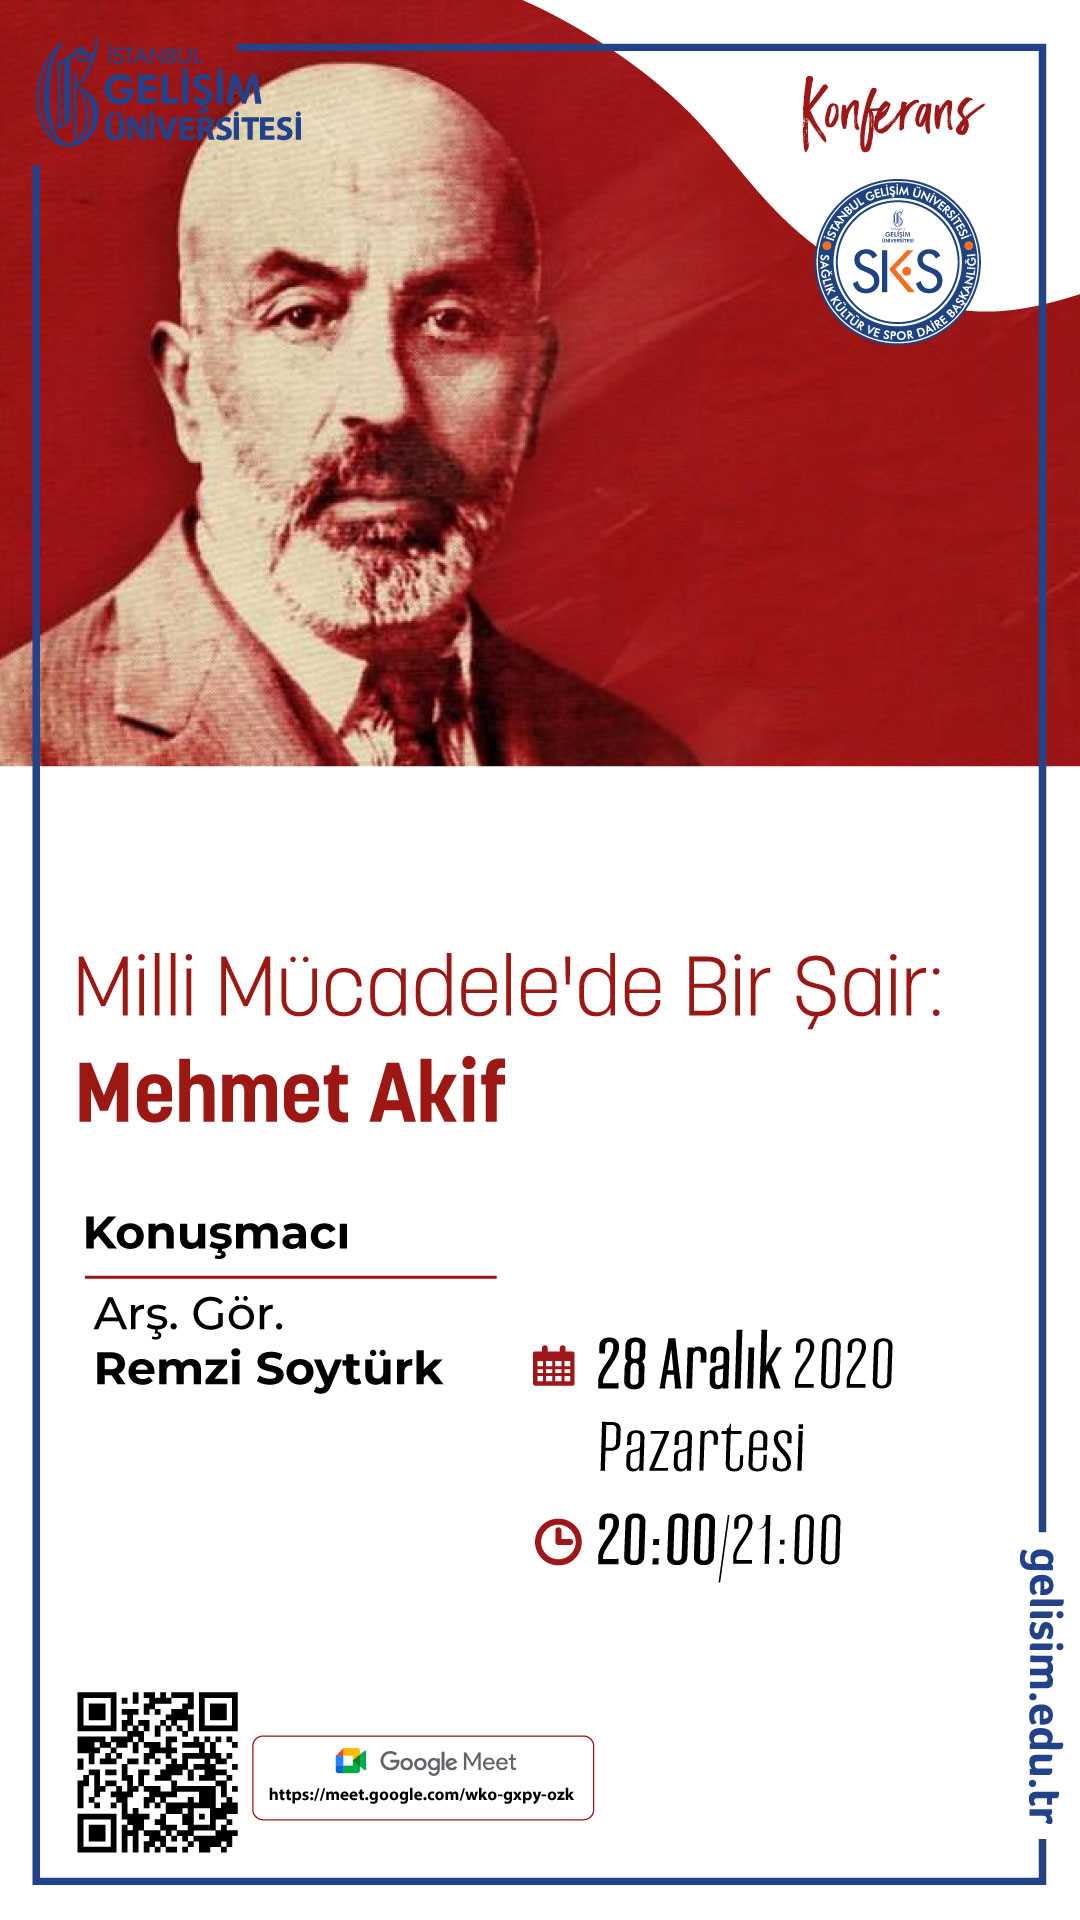 Milli Mücadele'de Bir Şair: Mehmet Akif